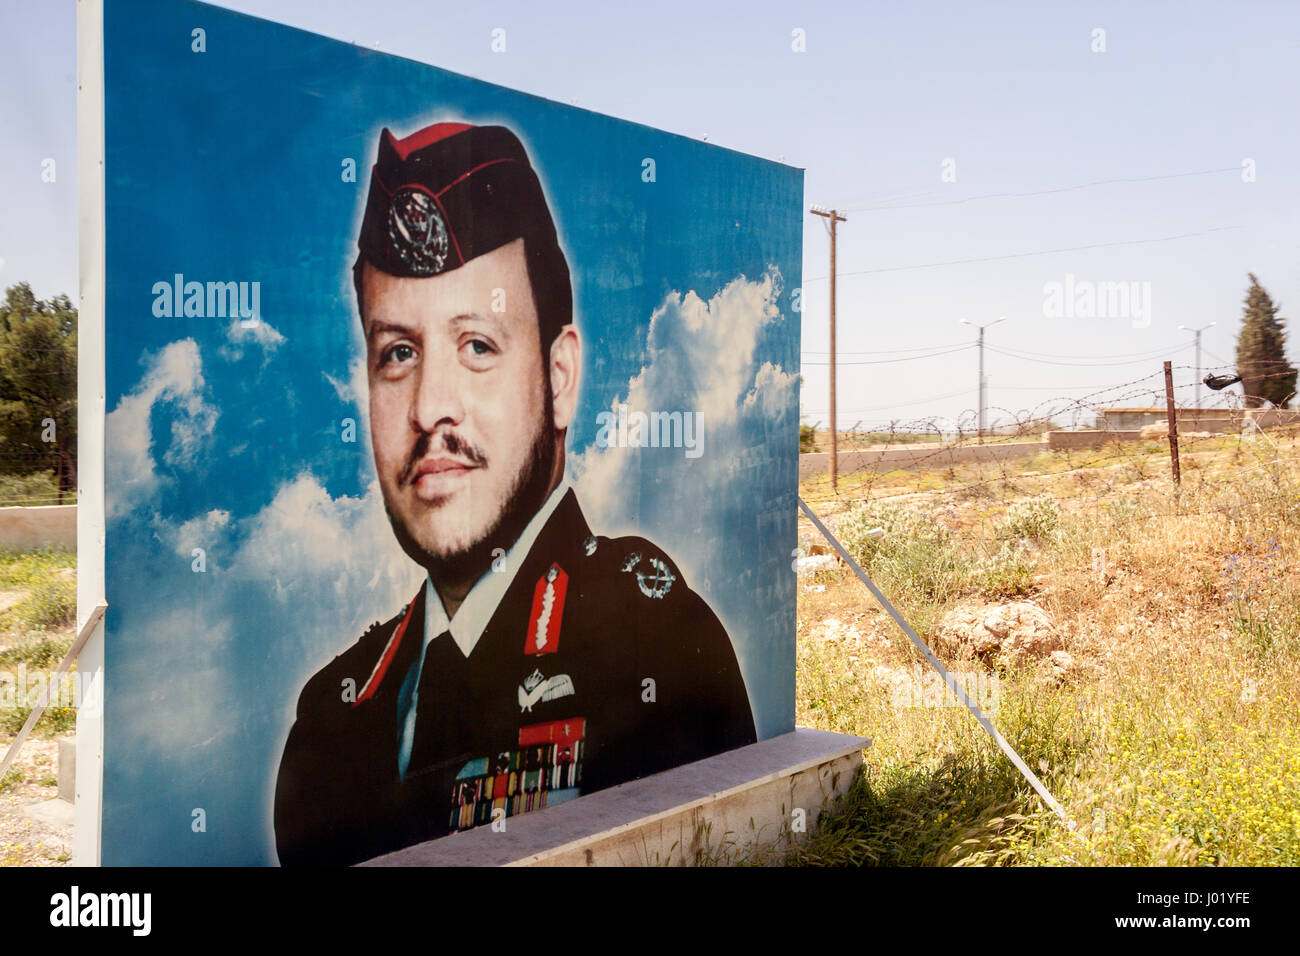 Porträts von Baschar al-Assad an der Grenze zwischen Libanon und Syrien. Stockfoto